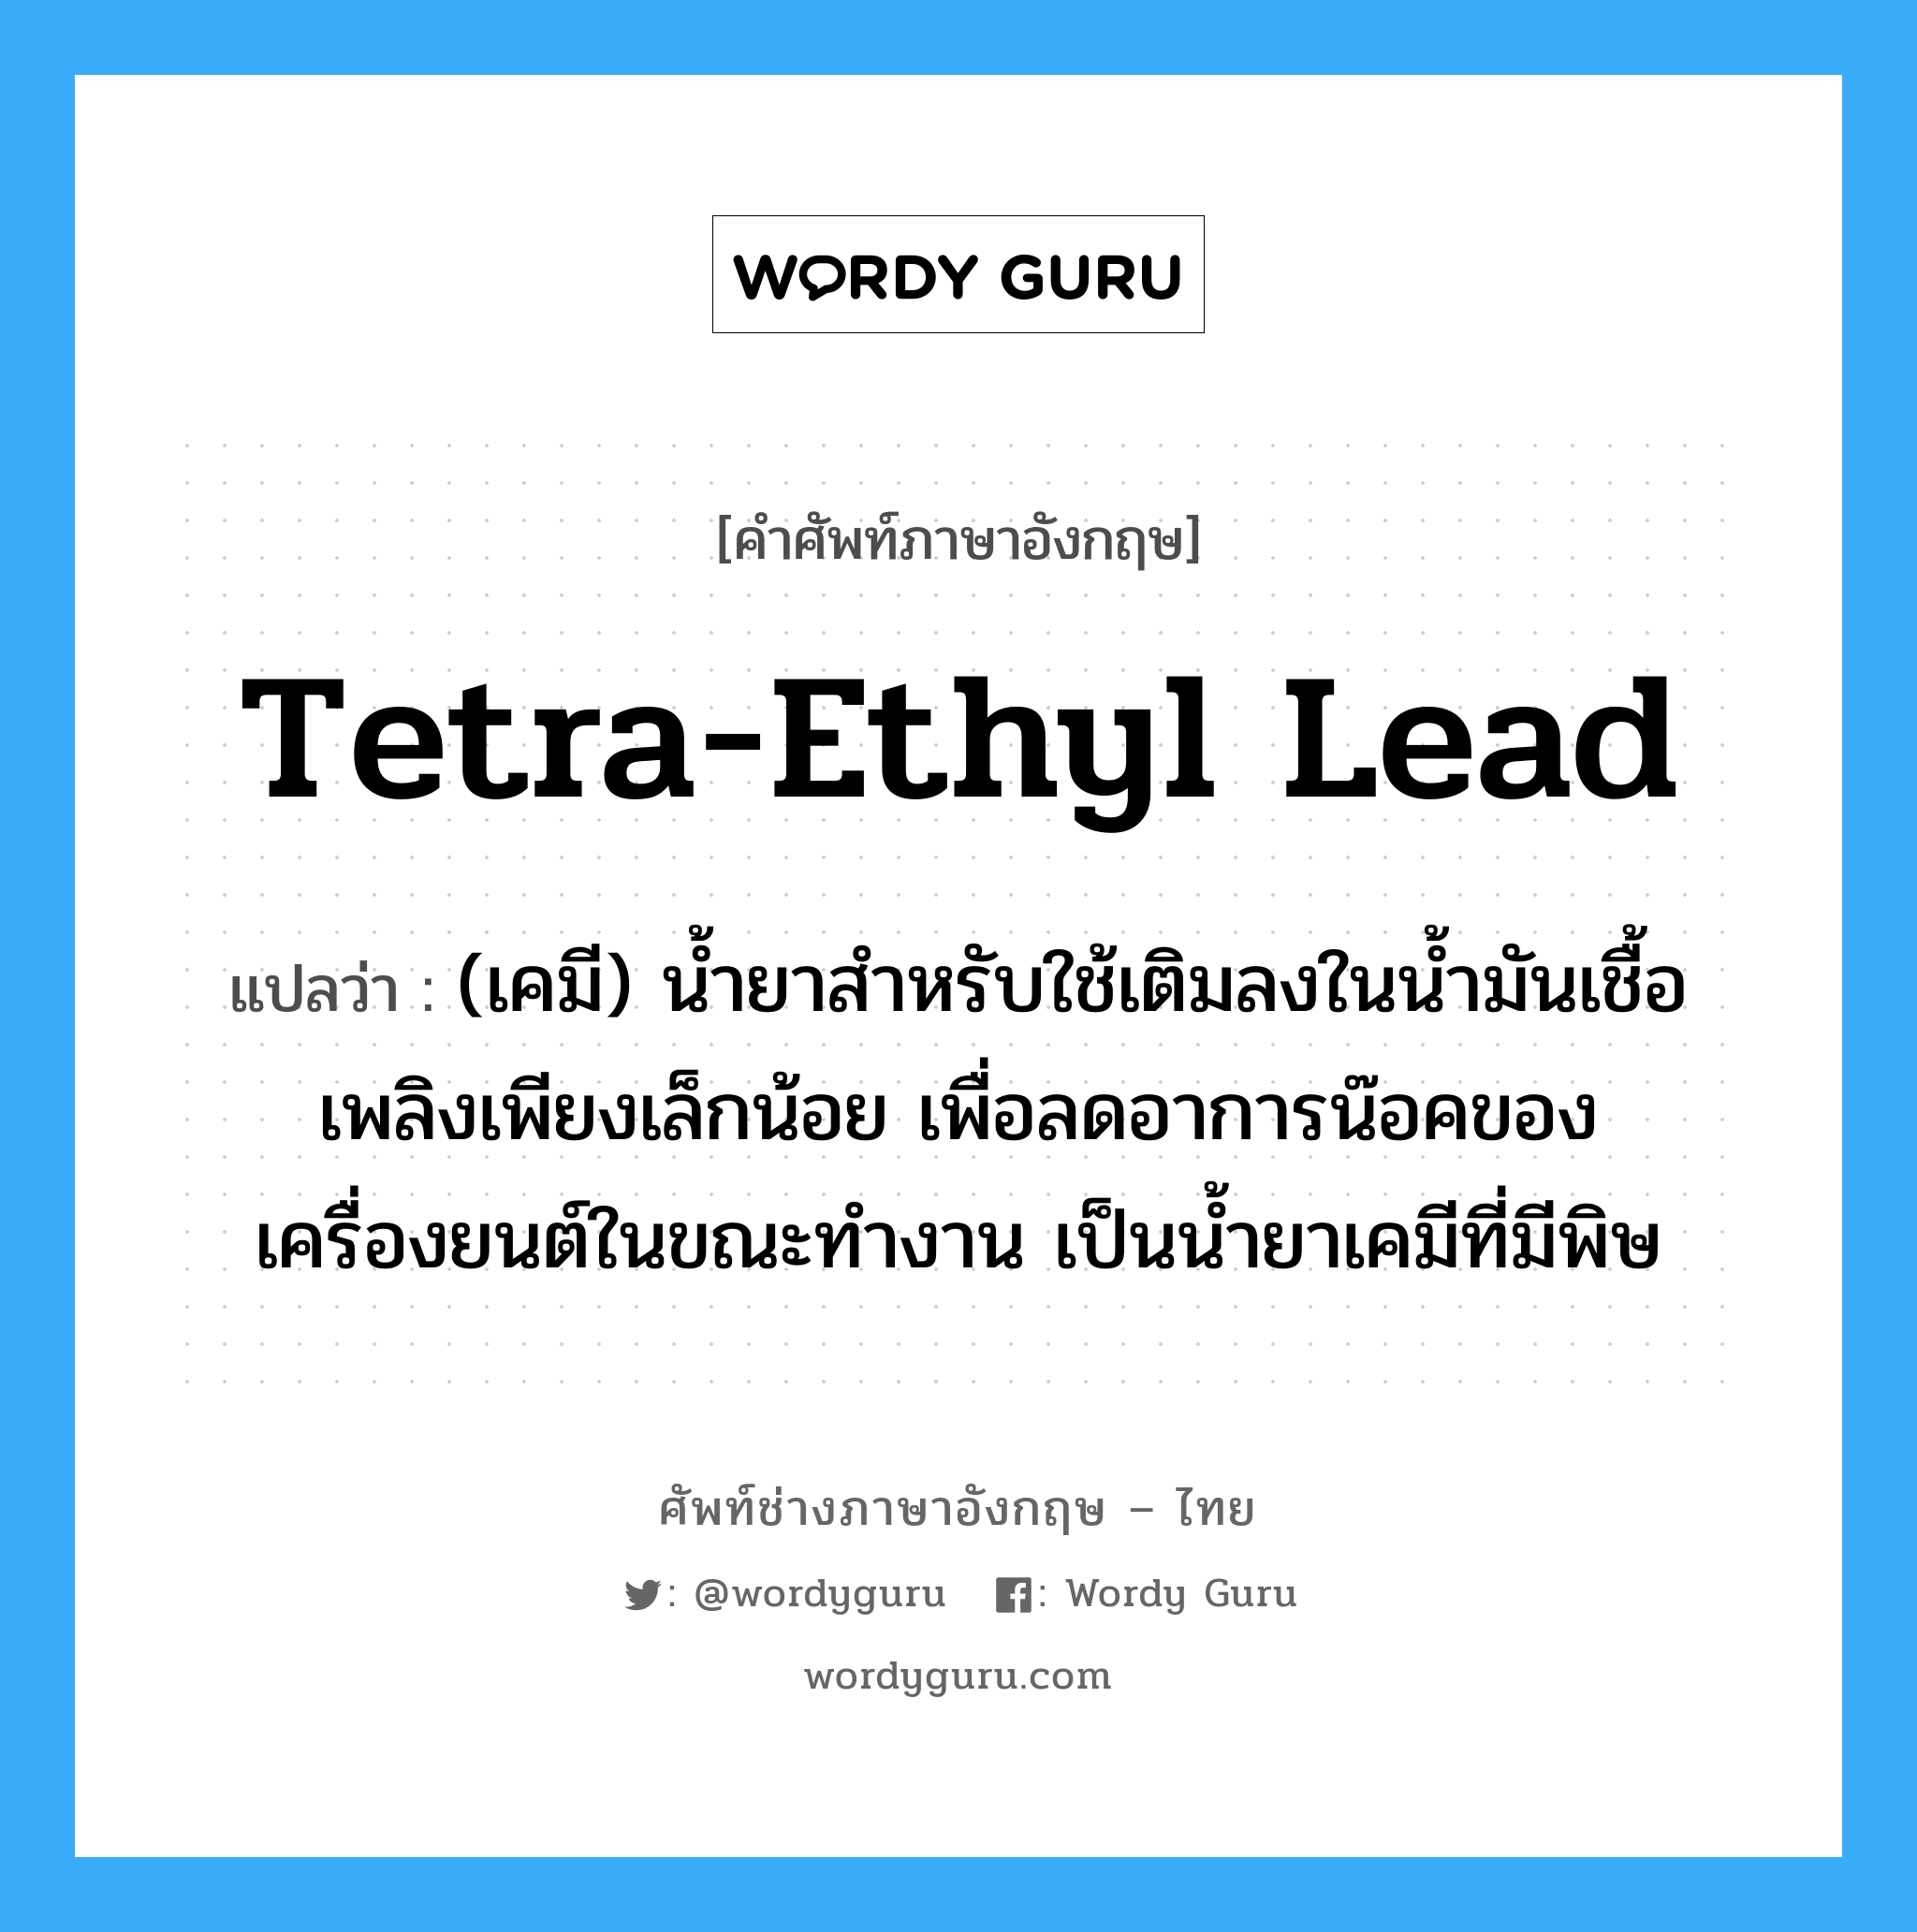 tetra-ethyl lead แปลว่า?, คำศัพท์ช่างภาษาอังกฤษ - ไทย tetra-ethyl lead คำศัพท์ภาษาอังกฤษ tetra-ethyl lead แปลว่า (เคมี) น้ำยาสำหรับใช้เติมลงในน้ำมันเชื้อเพลิงเพียงเล็กน้อย เพื่อลดอาการน๊อคของเครื่องยนต์ในขณะทำงาน เป็นน้ำยาเคมีที่มีพิษ